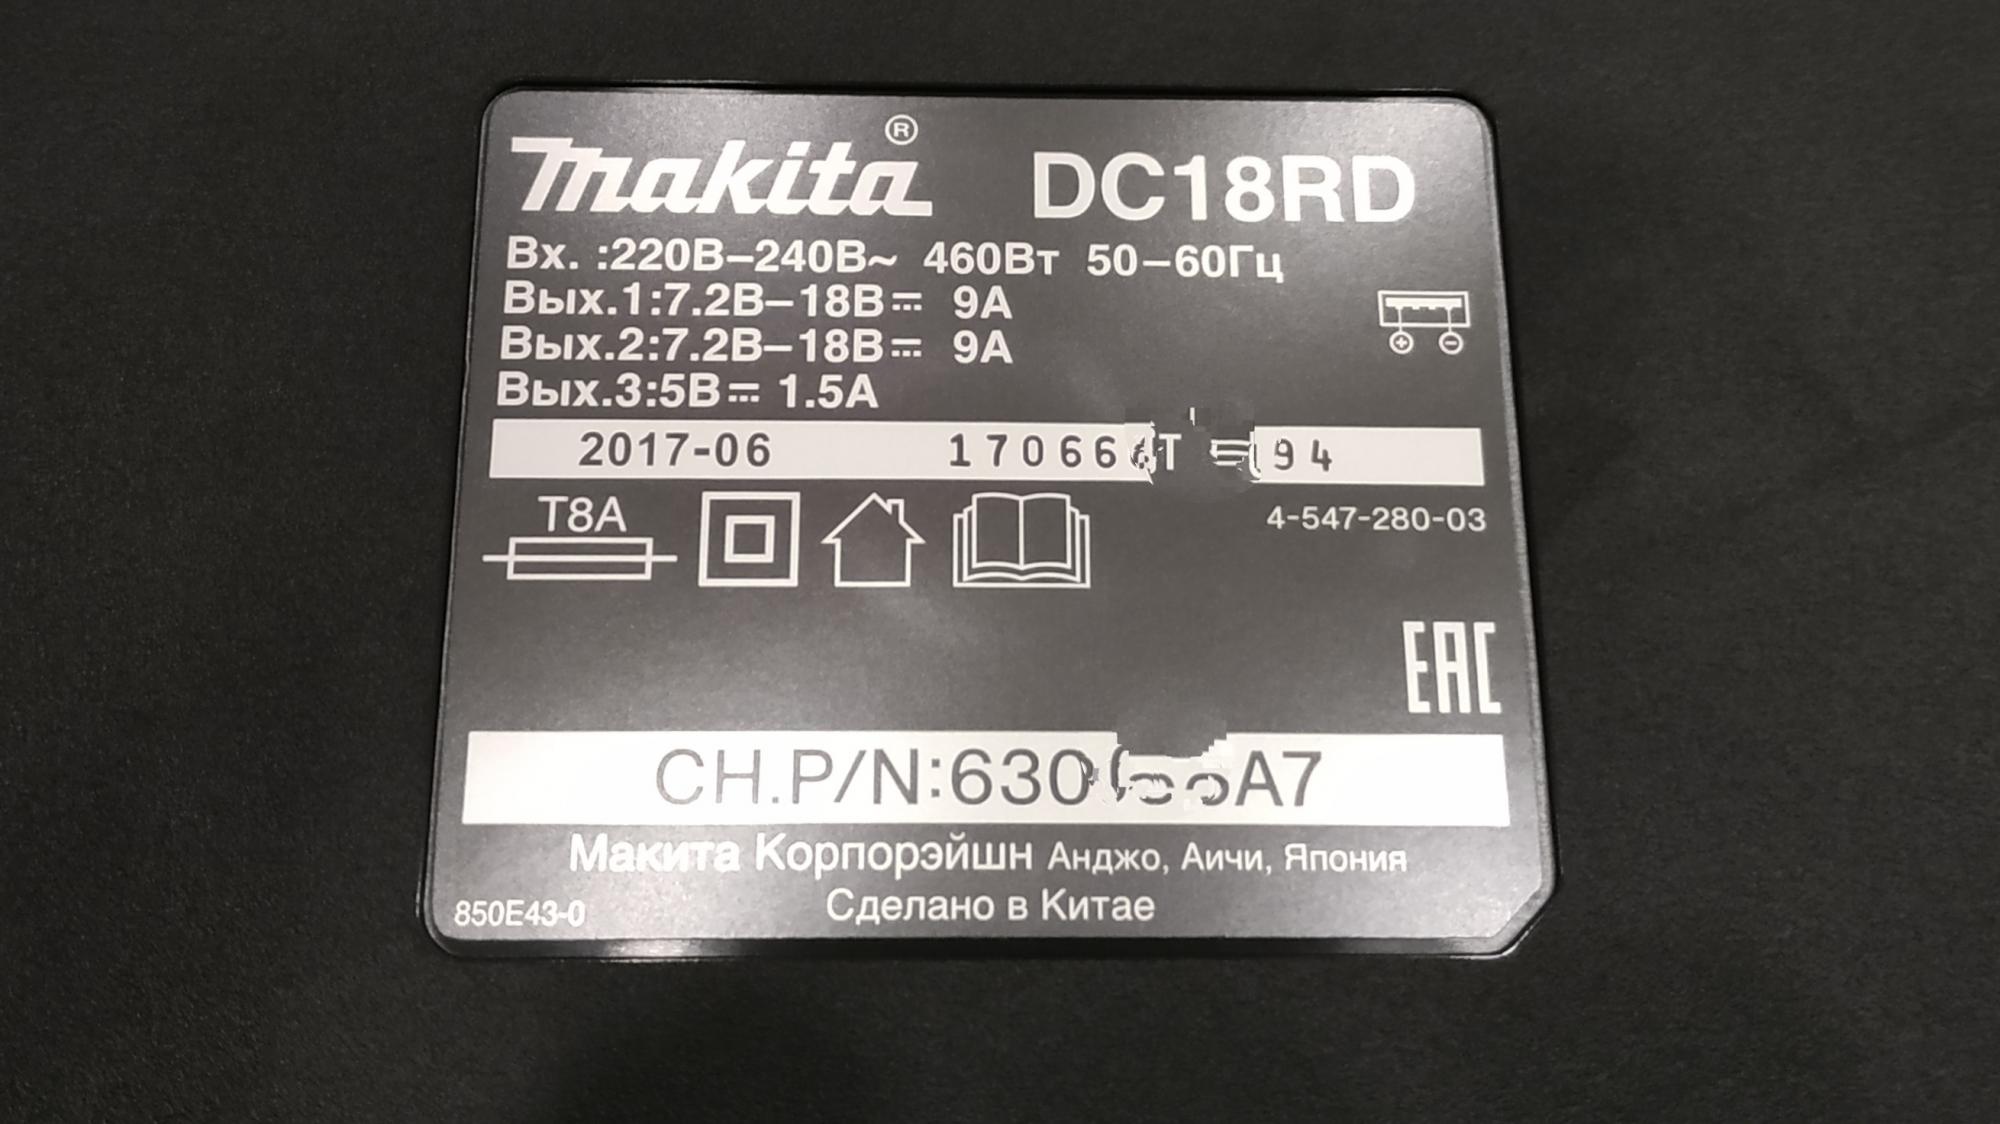 Аккумулятор х5 е53. Коммутатор 2х АКБ. 6dm18 аккумулятор. Расшифровка быстрой зарядки Макита rc18. DEXP k18 АКБ.